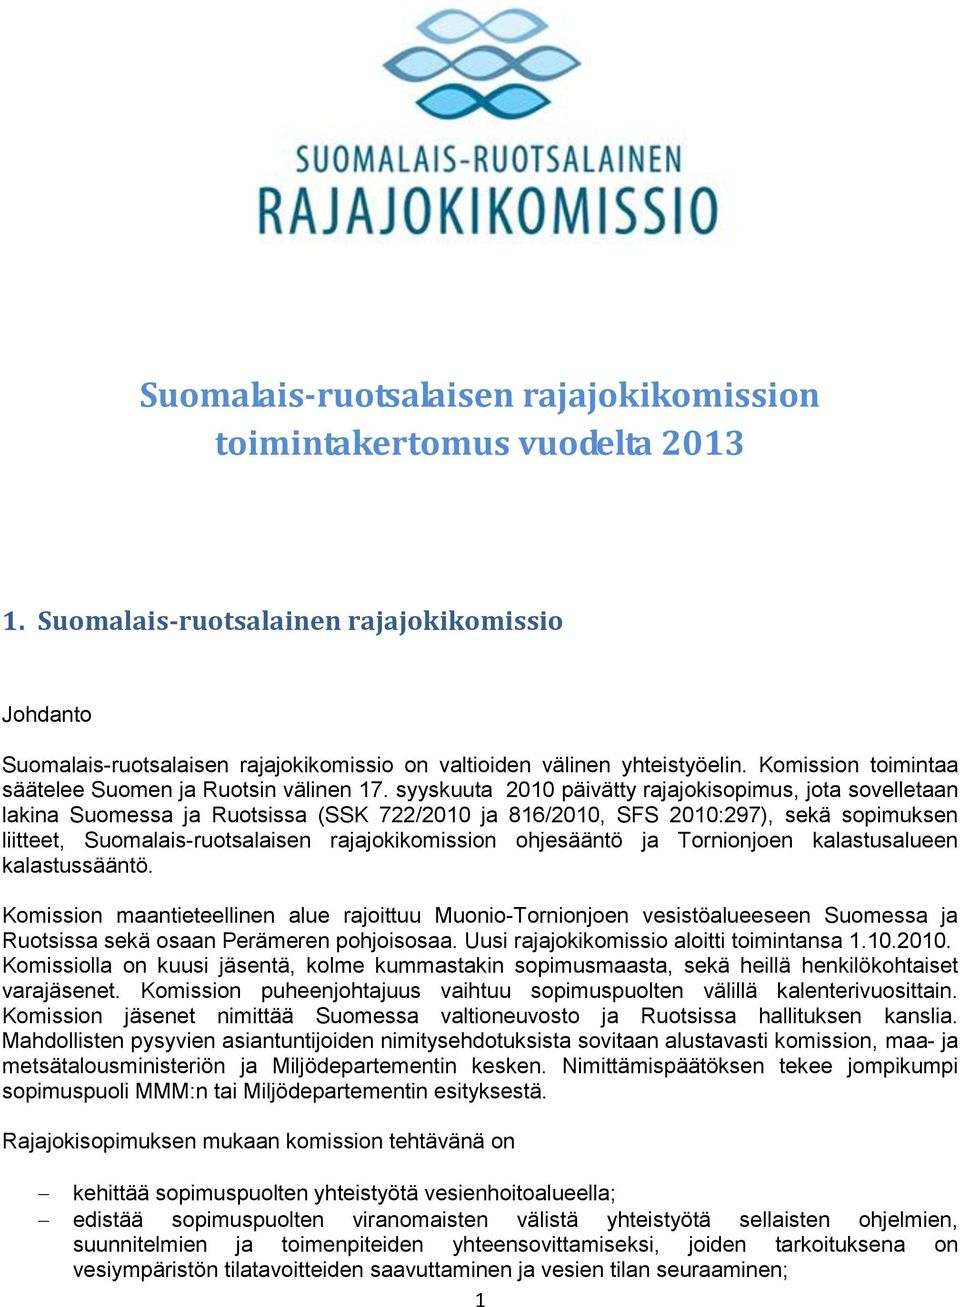 syyskuuta 2010 päivätty rajajokisopimus, jota sovelletaan lakina Suomessa ja Ruotsissa (SSK 722/2010 ja 816/2010, SFS 2010:297), sekä sopimuksen liitteet, Suomalais-ruotsalaisen rajajokikomission